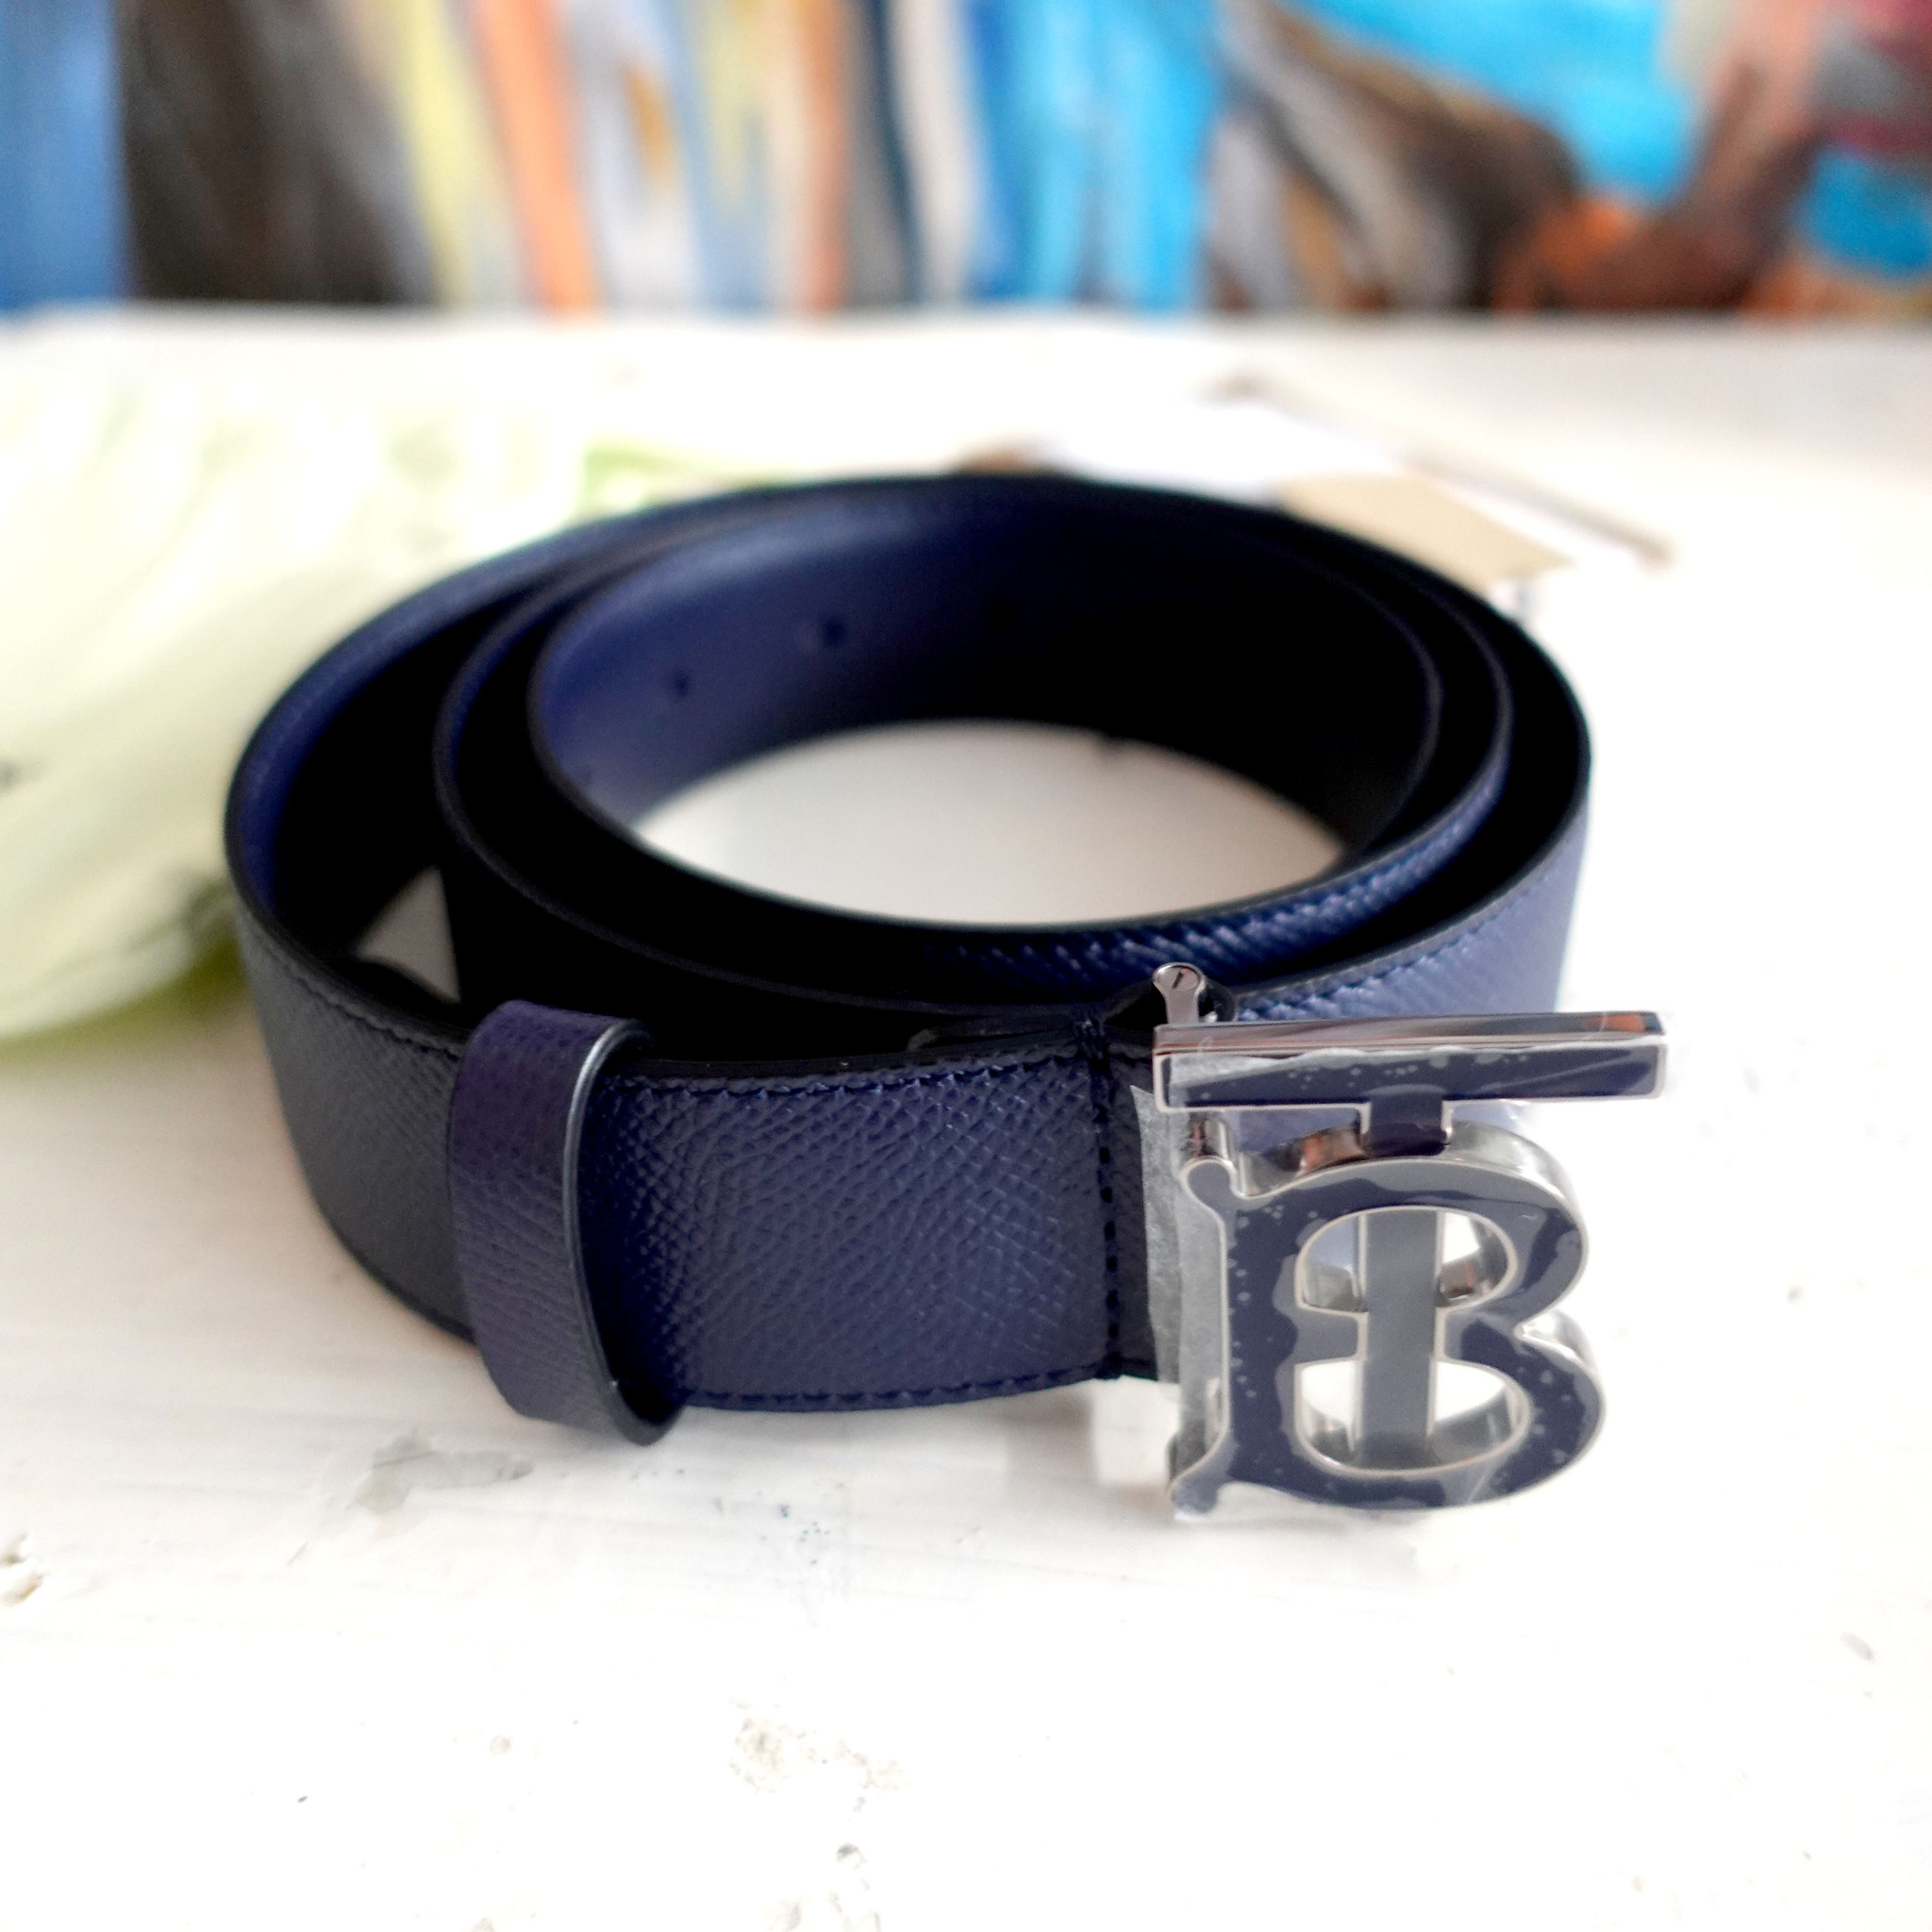 Burberry Belt - Buy Burberry Belt online in India